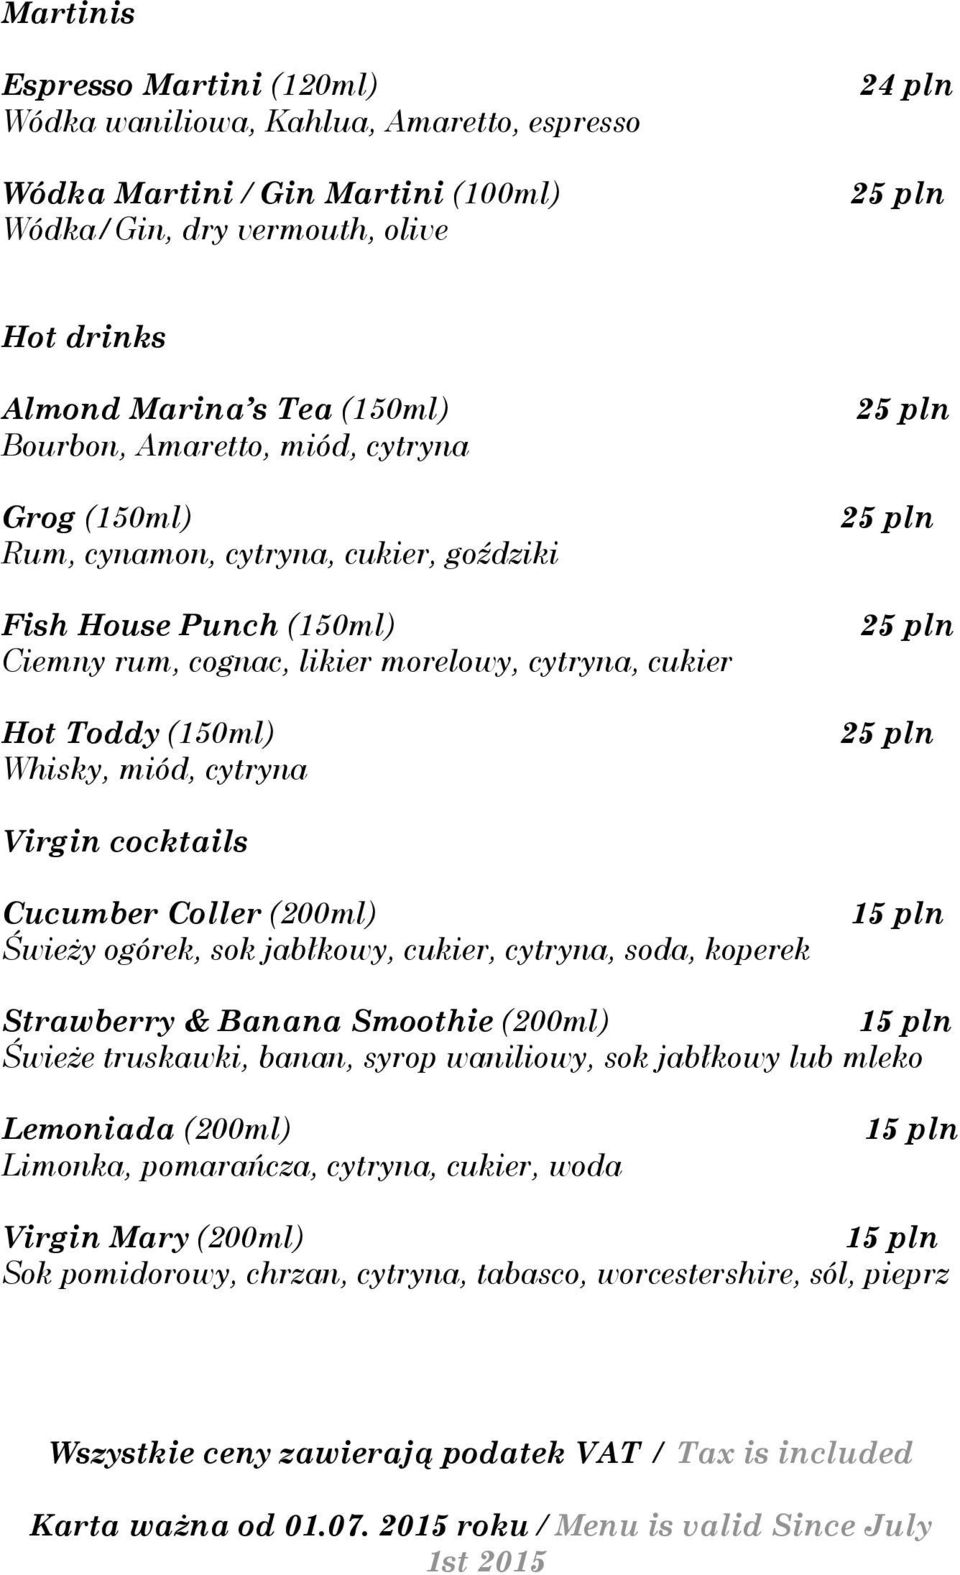 Virgin cocktails Cucumber Coller (200ml) Świeży ogórek, sok jabłkowy, cukier, cytryna, soda, koperek Strawberry & Banana Smoothie (200ml) Świeże truskawki, banan, syrop waniliowy, sok jabłkowy lub